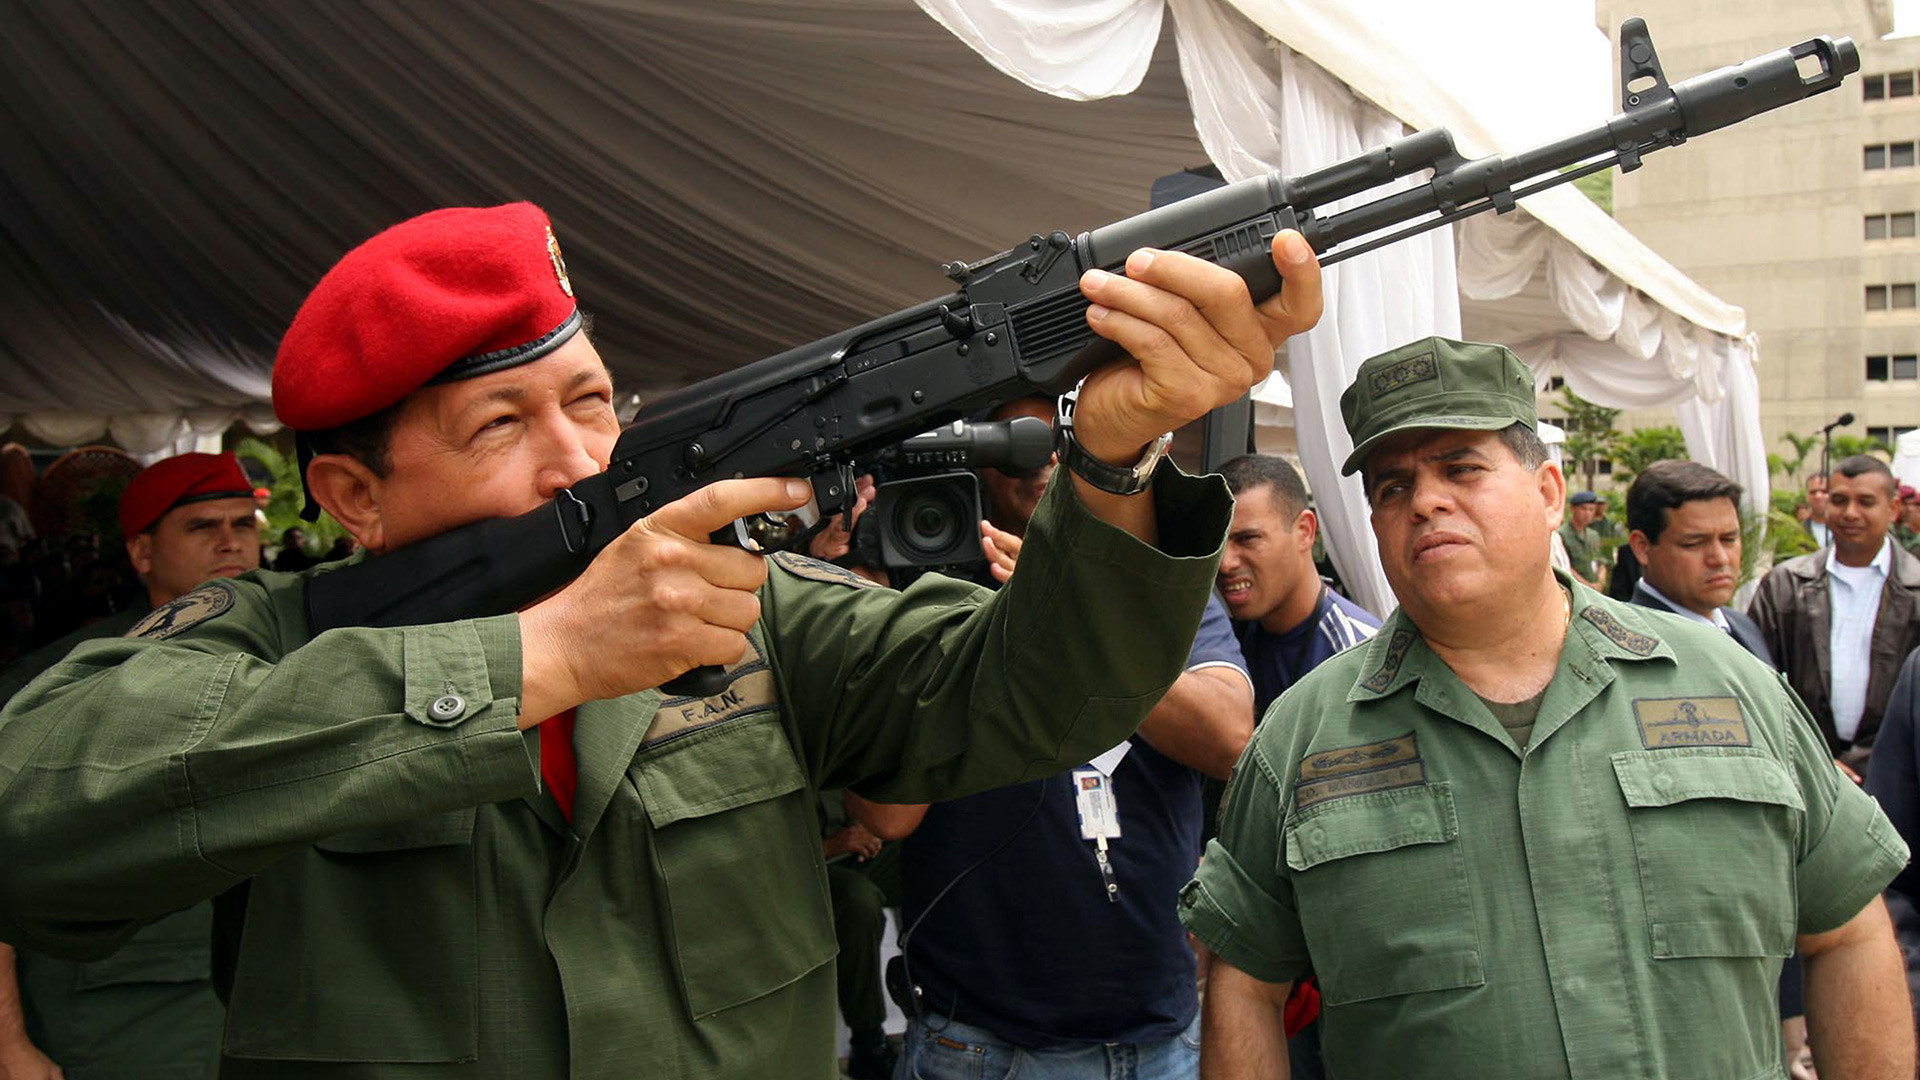 Presiden Venezuela Hugo Chavez menjajal AK-103 saat pameran militer di Caracas pada 2006.